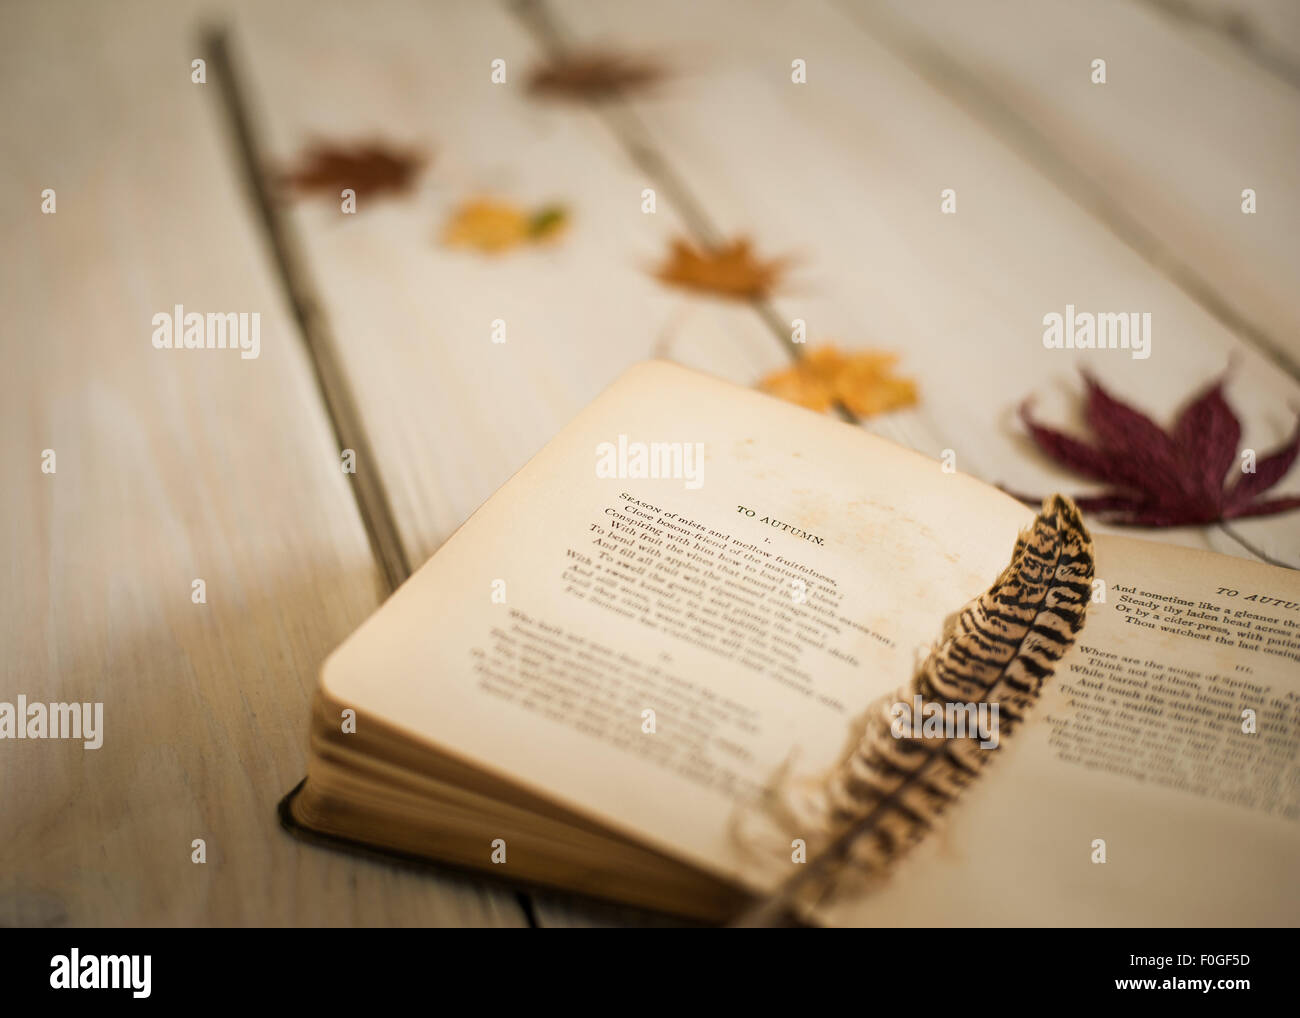 Primer plano de vintage libro de poesía abierta en oda al otoño de John Keats, con pluma y hojas de otoño Foto de stock